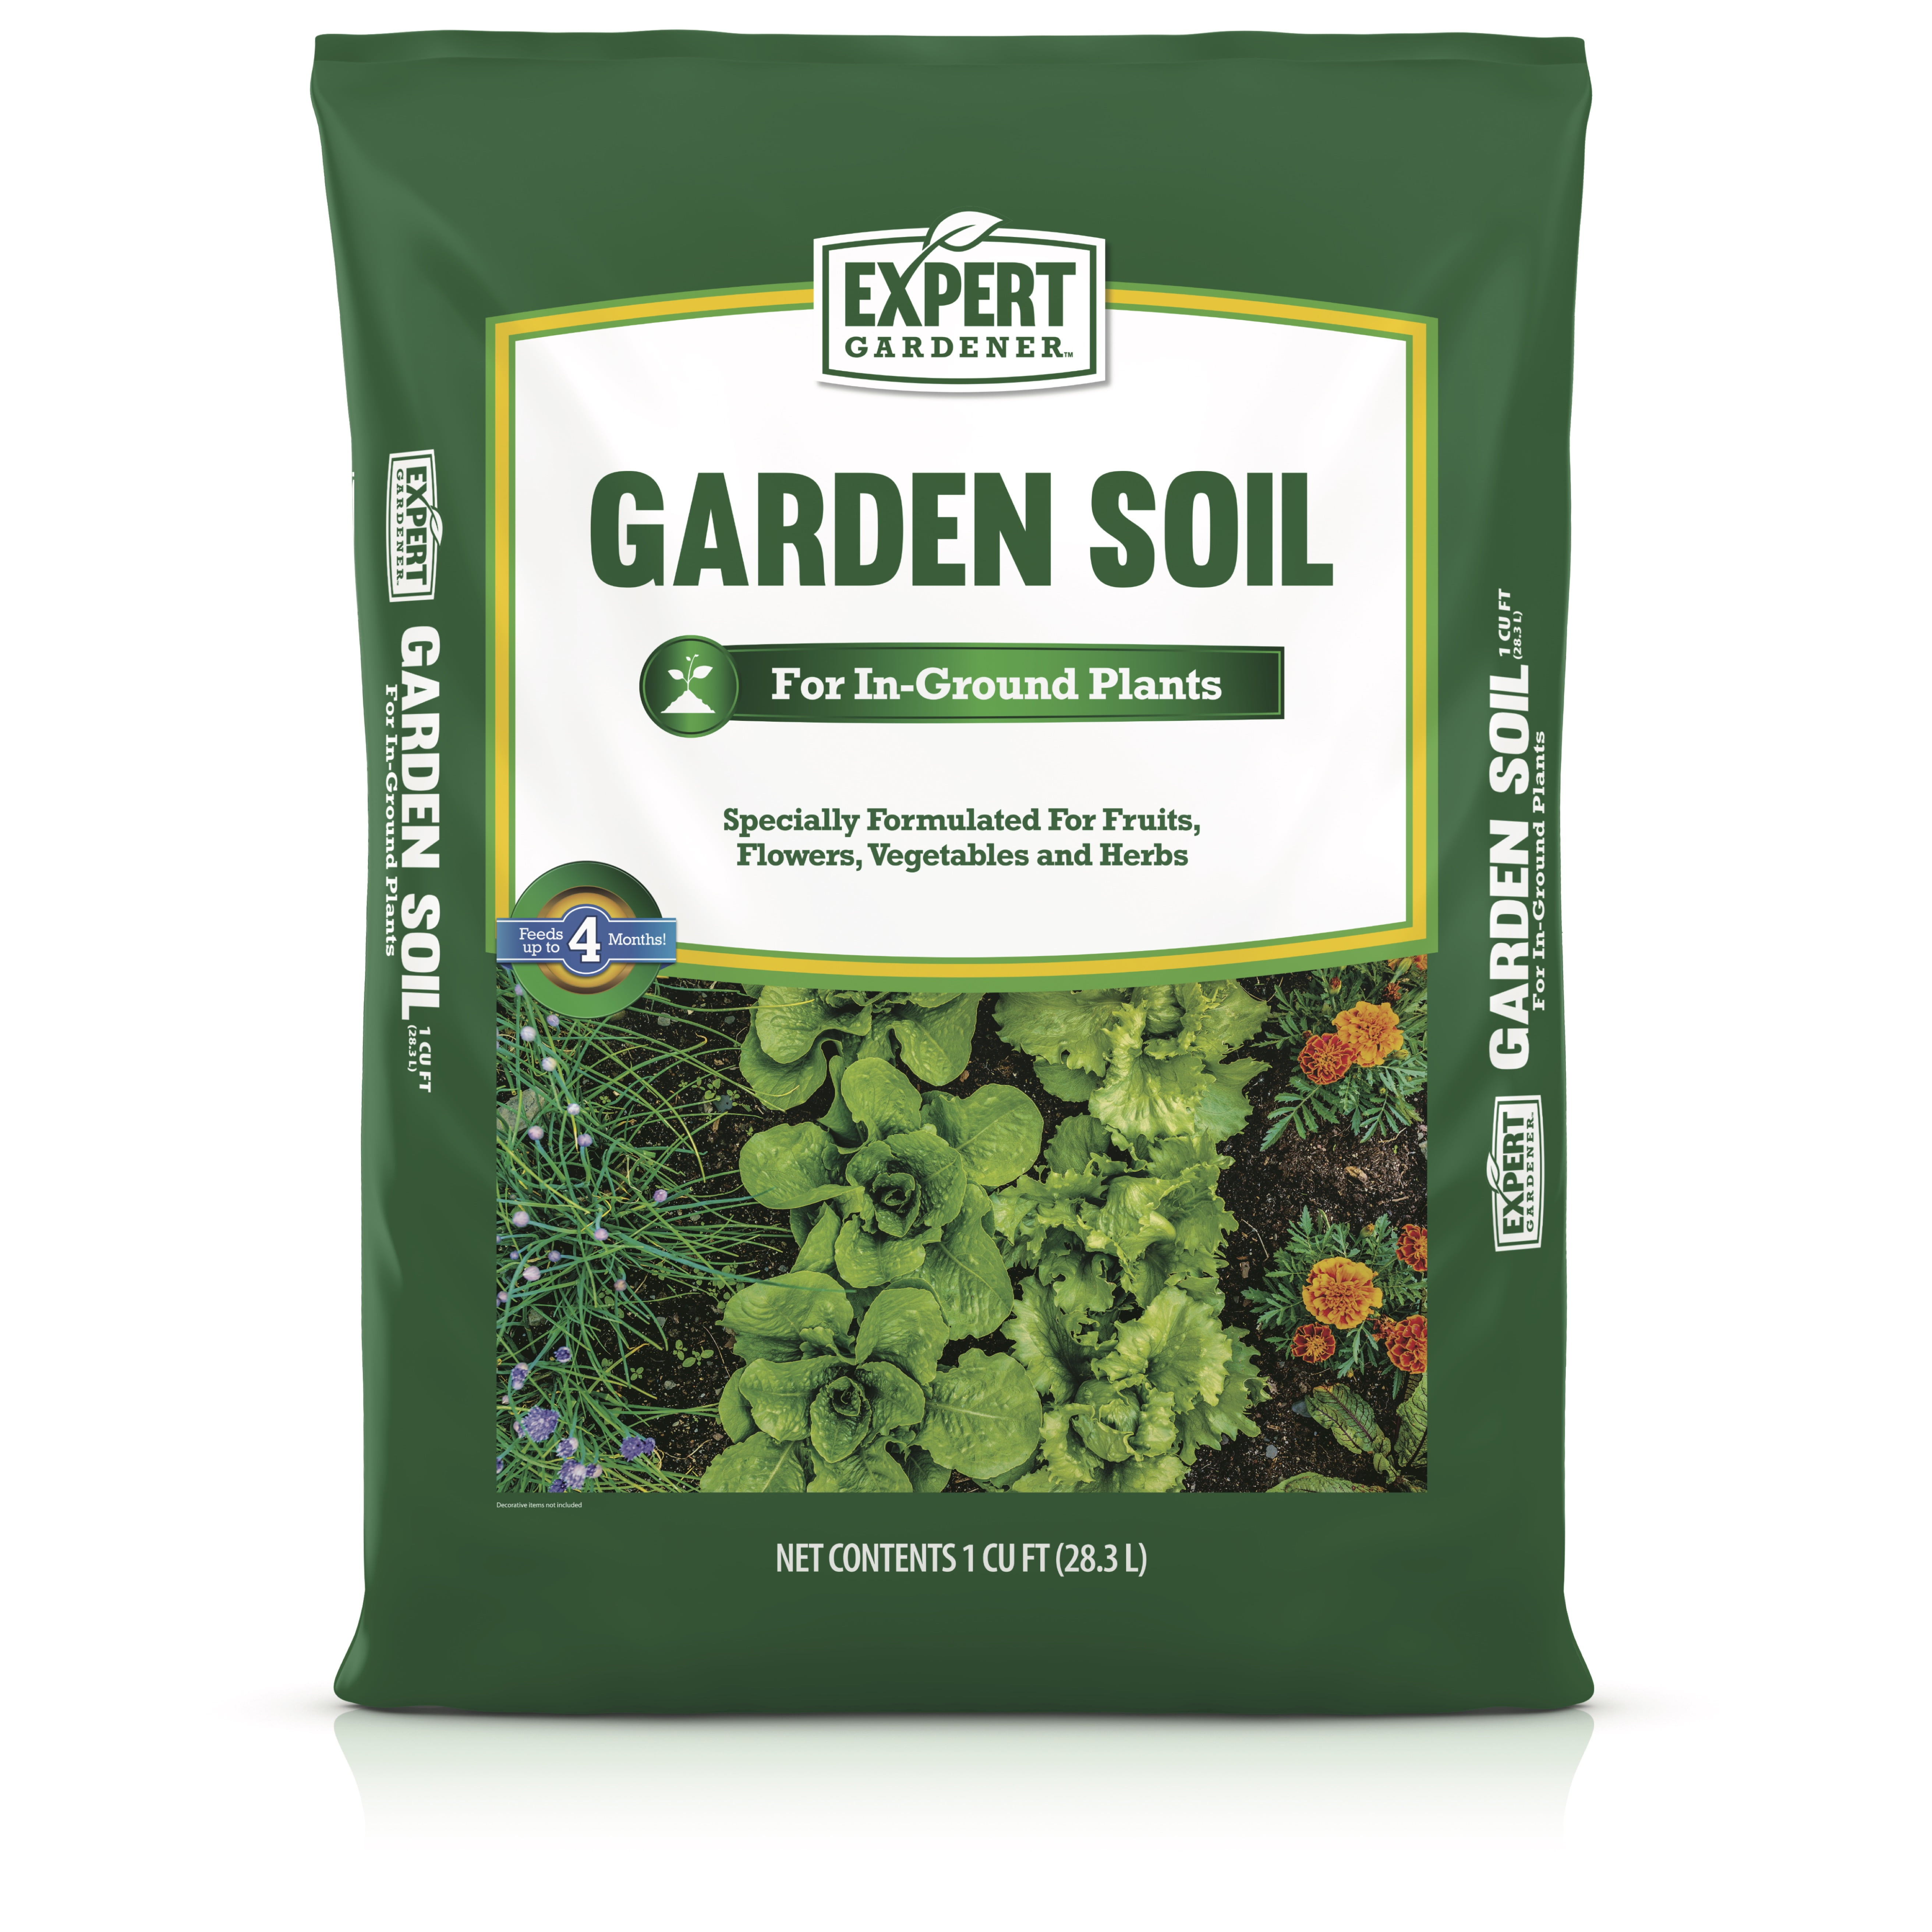 Expert Gardener Garden Soil For In Ground Plants 1 Cu Ft Walmart Com Walmart Com